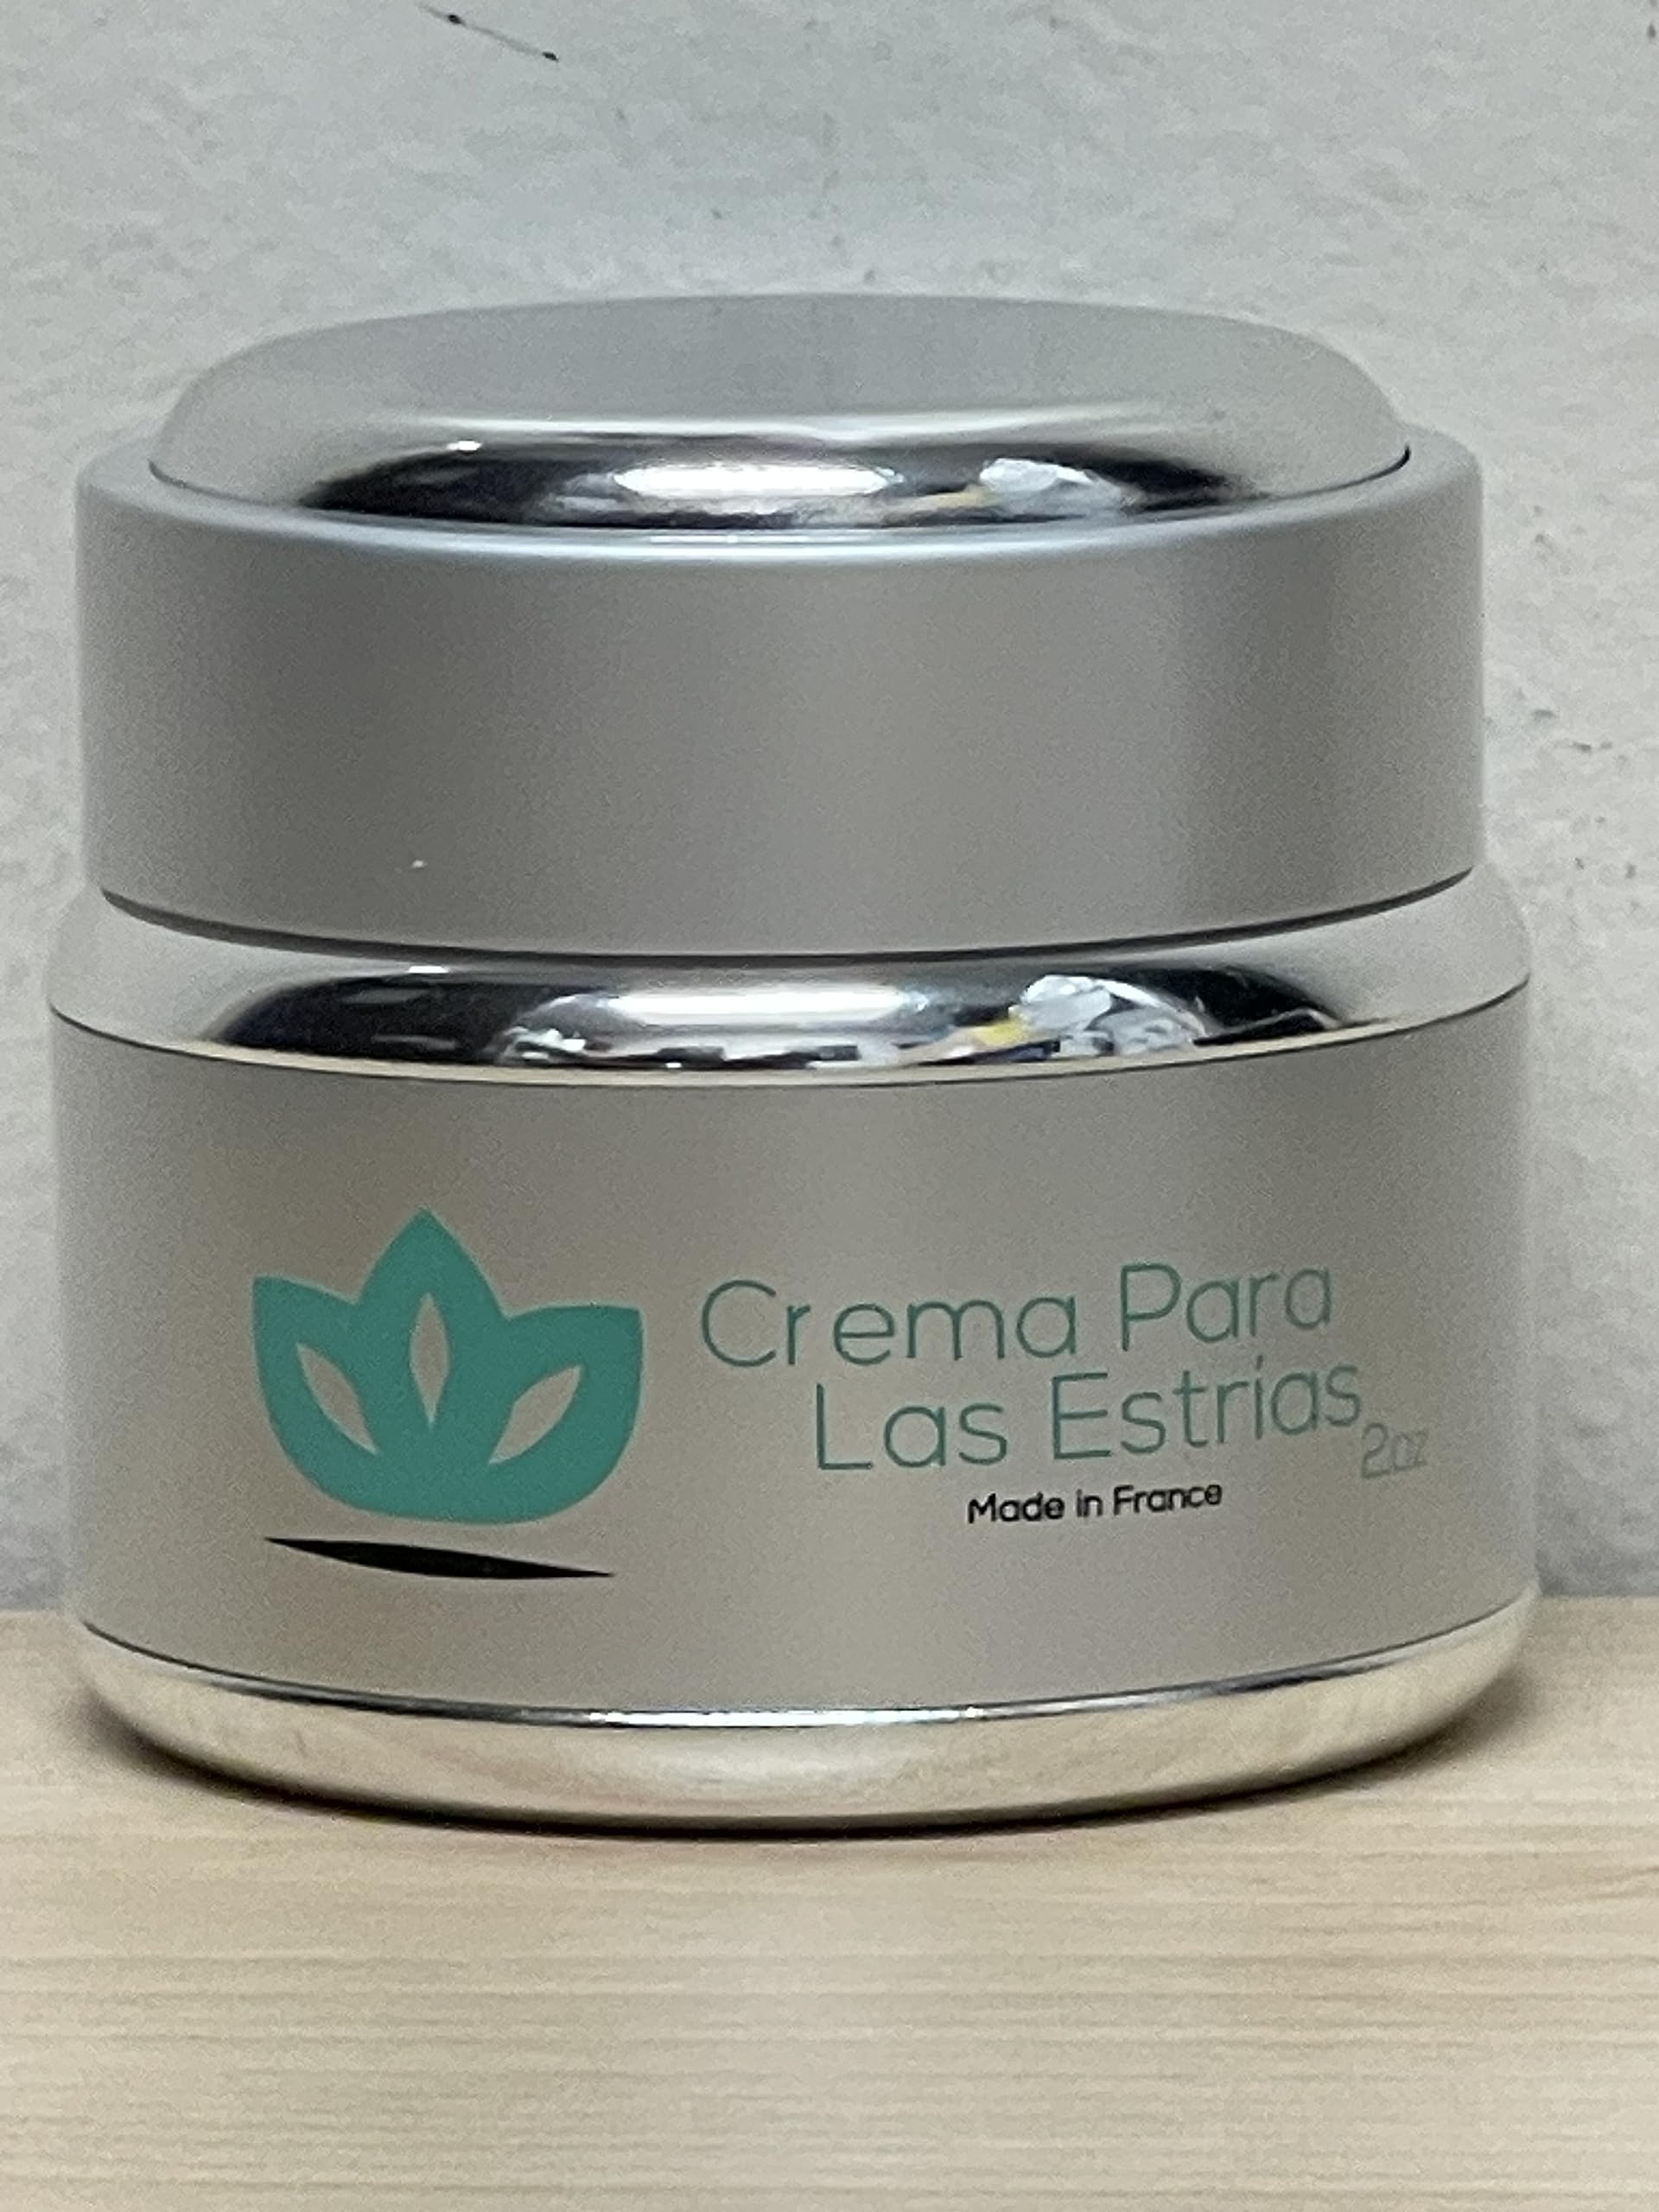 The Healing Touch Crema Para Las Estrias - Buenisimo Para Eliminar Las Estrias de Embarazo, Estomago, Piernas Y Pechos